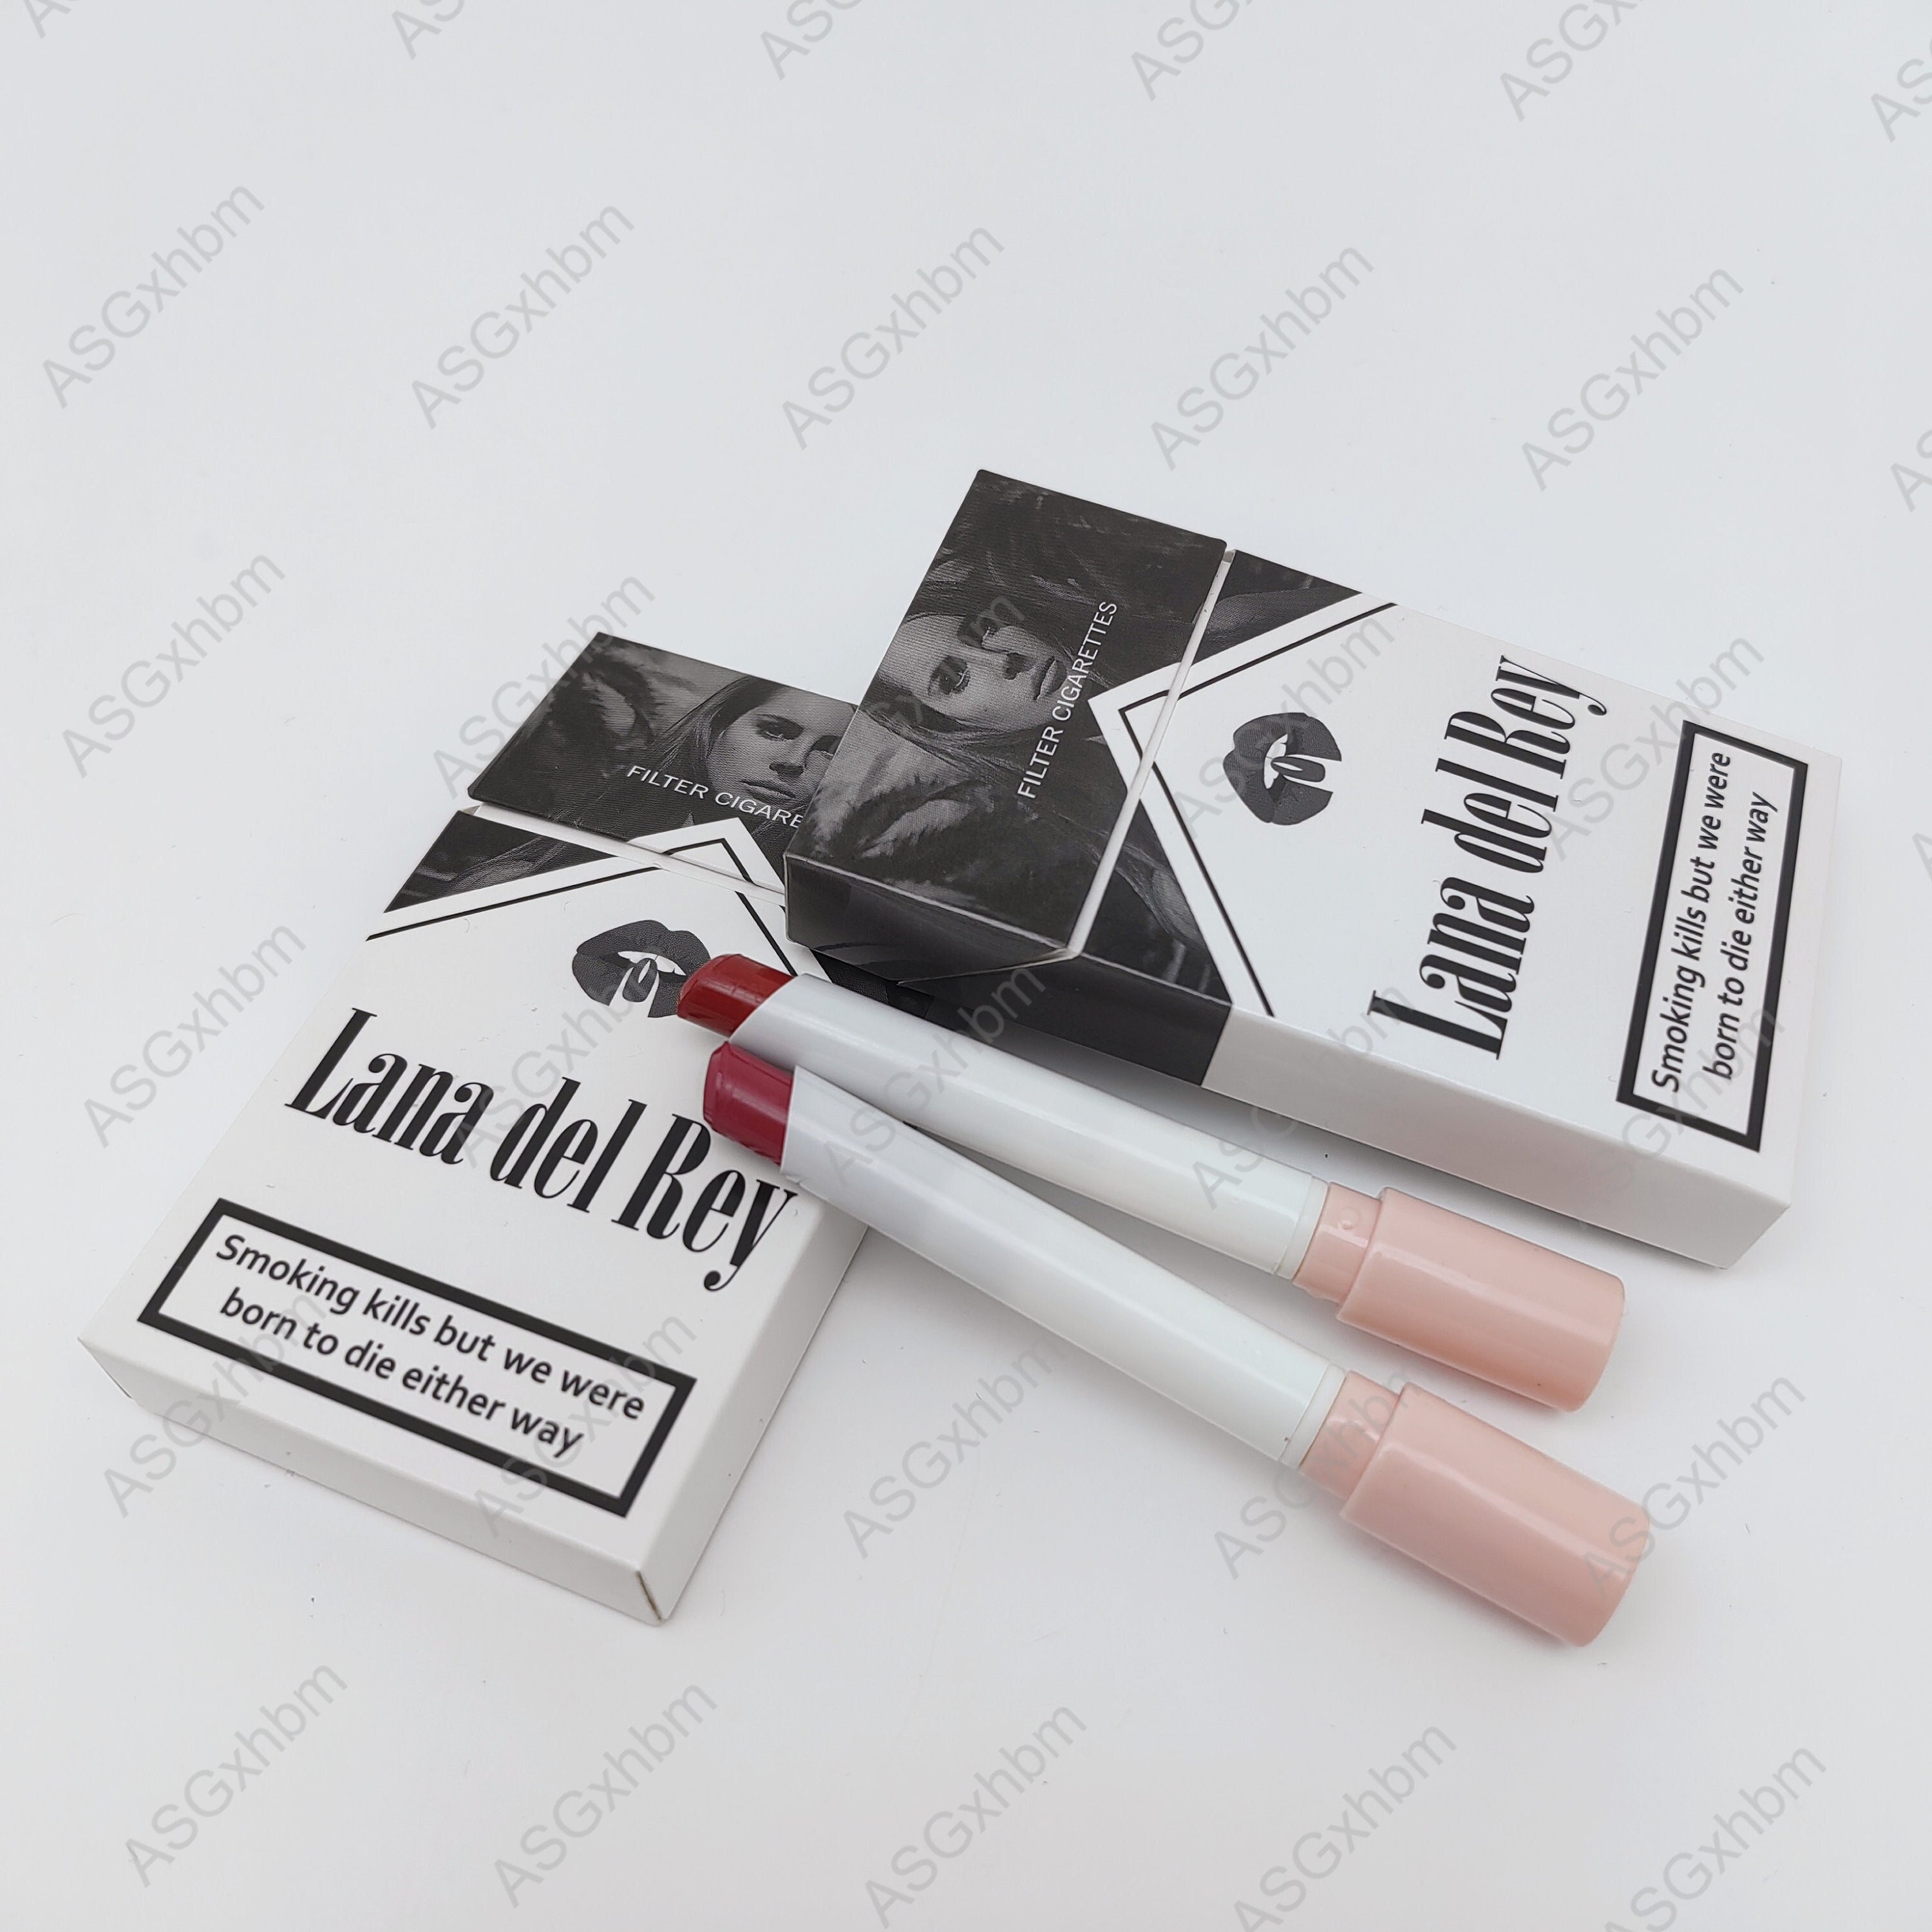 Chanel Cigarette Matte Phone Case